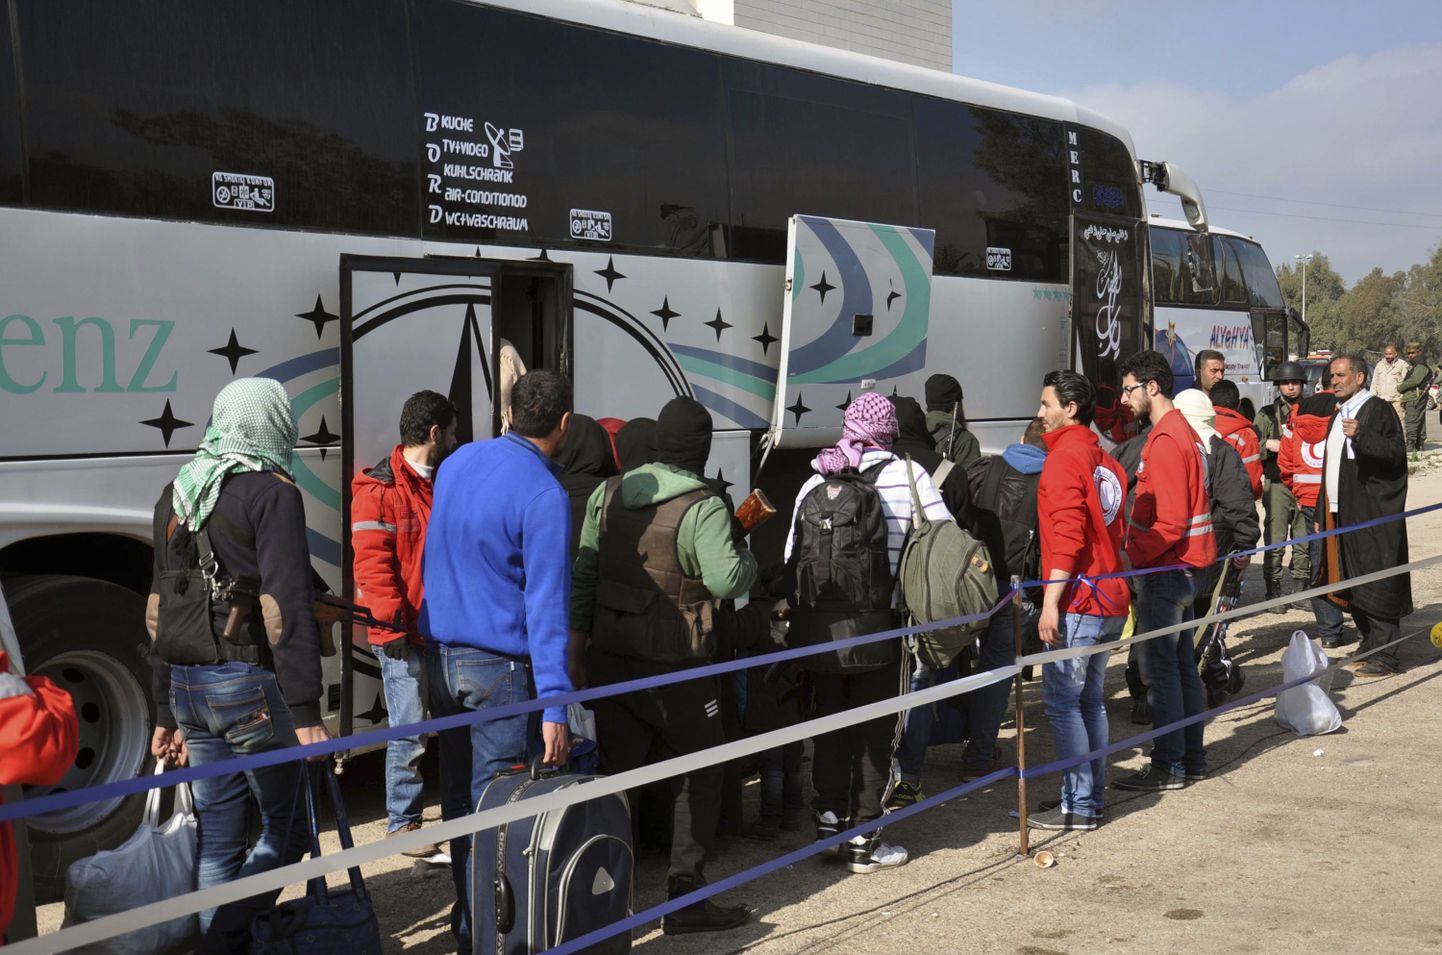 Süüria ametliku uudisteagentuuri SANA foto Süüria opositsioonivõitlejaist, kes astuvad oma relvade ja kohvritega bussi, et lahkuda mässuliste valduses olevast Homsi provintsist Süürias.